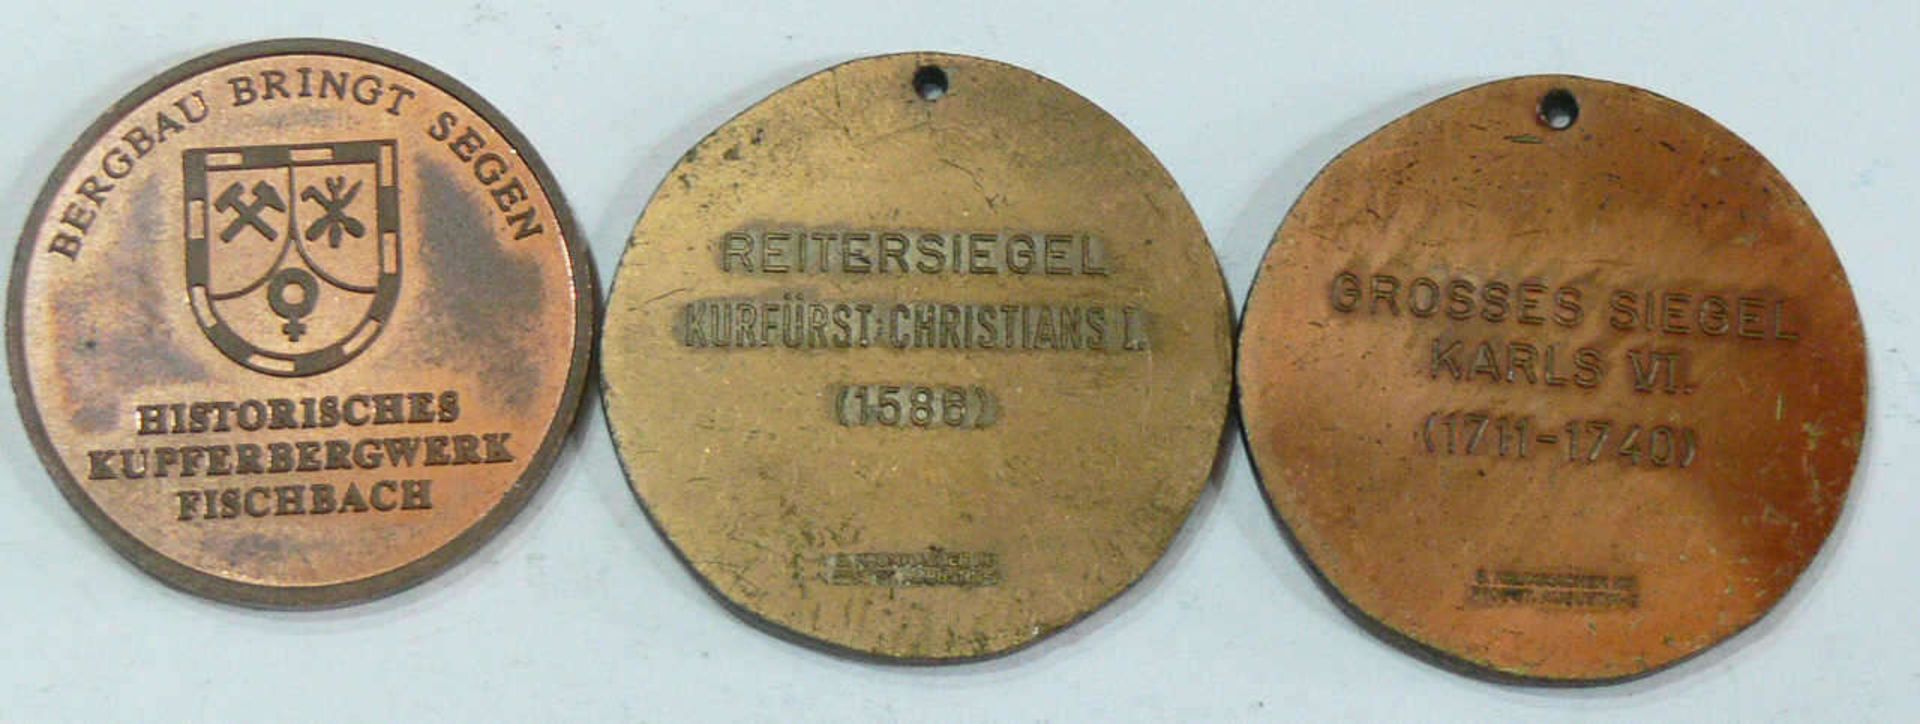 Konvolut Medaillen, bestehend aus: Großes Siegel Karls VI., Reitersiegel Kurfürst Christians I. - Bild 2 aus 2